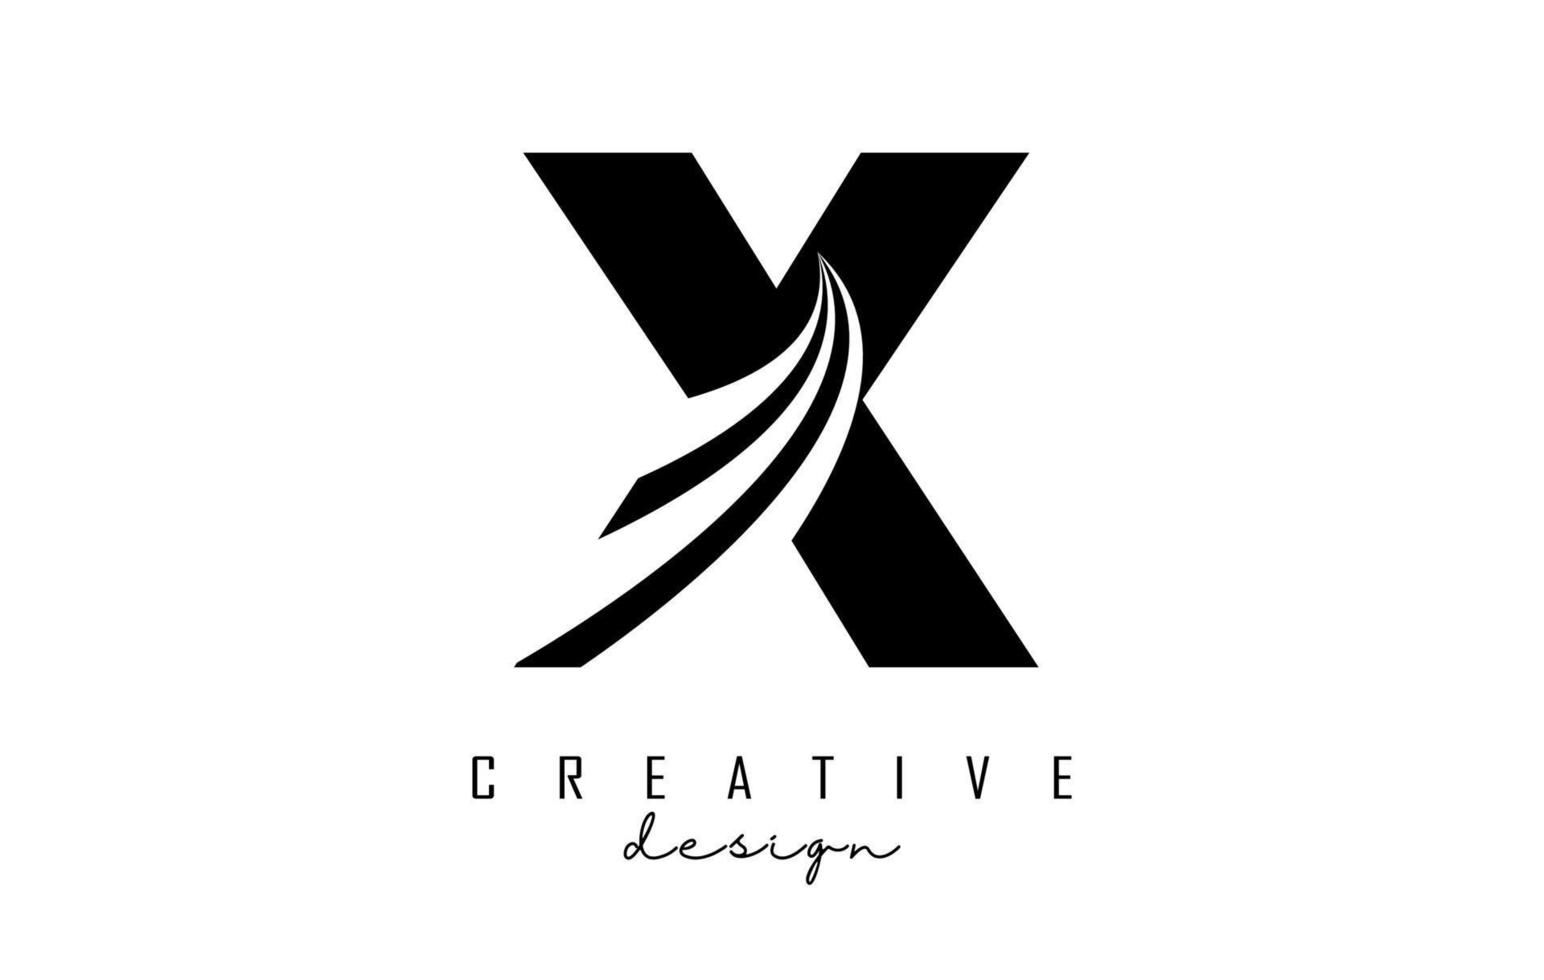 zwarte letter x-logo met leidende lijnen en wegconceptontwerp. letter x met geometrisch ontwerp. vector